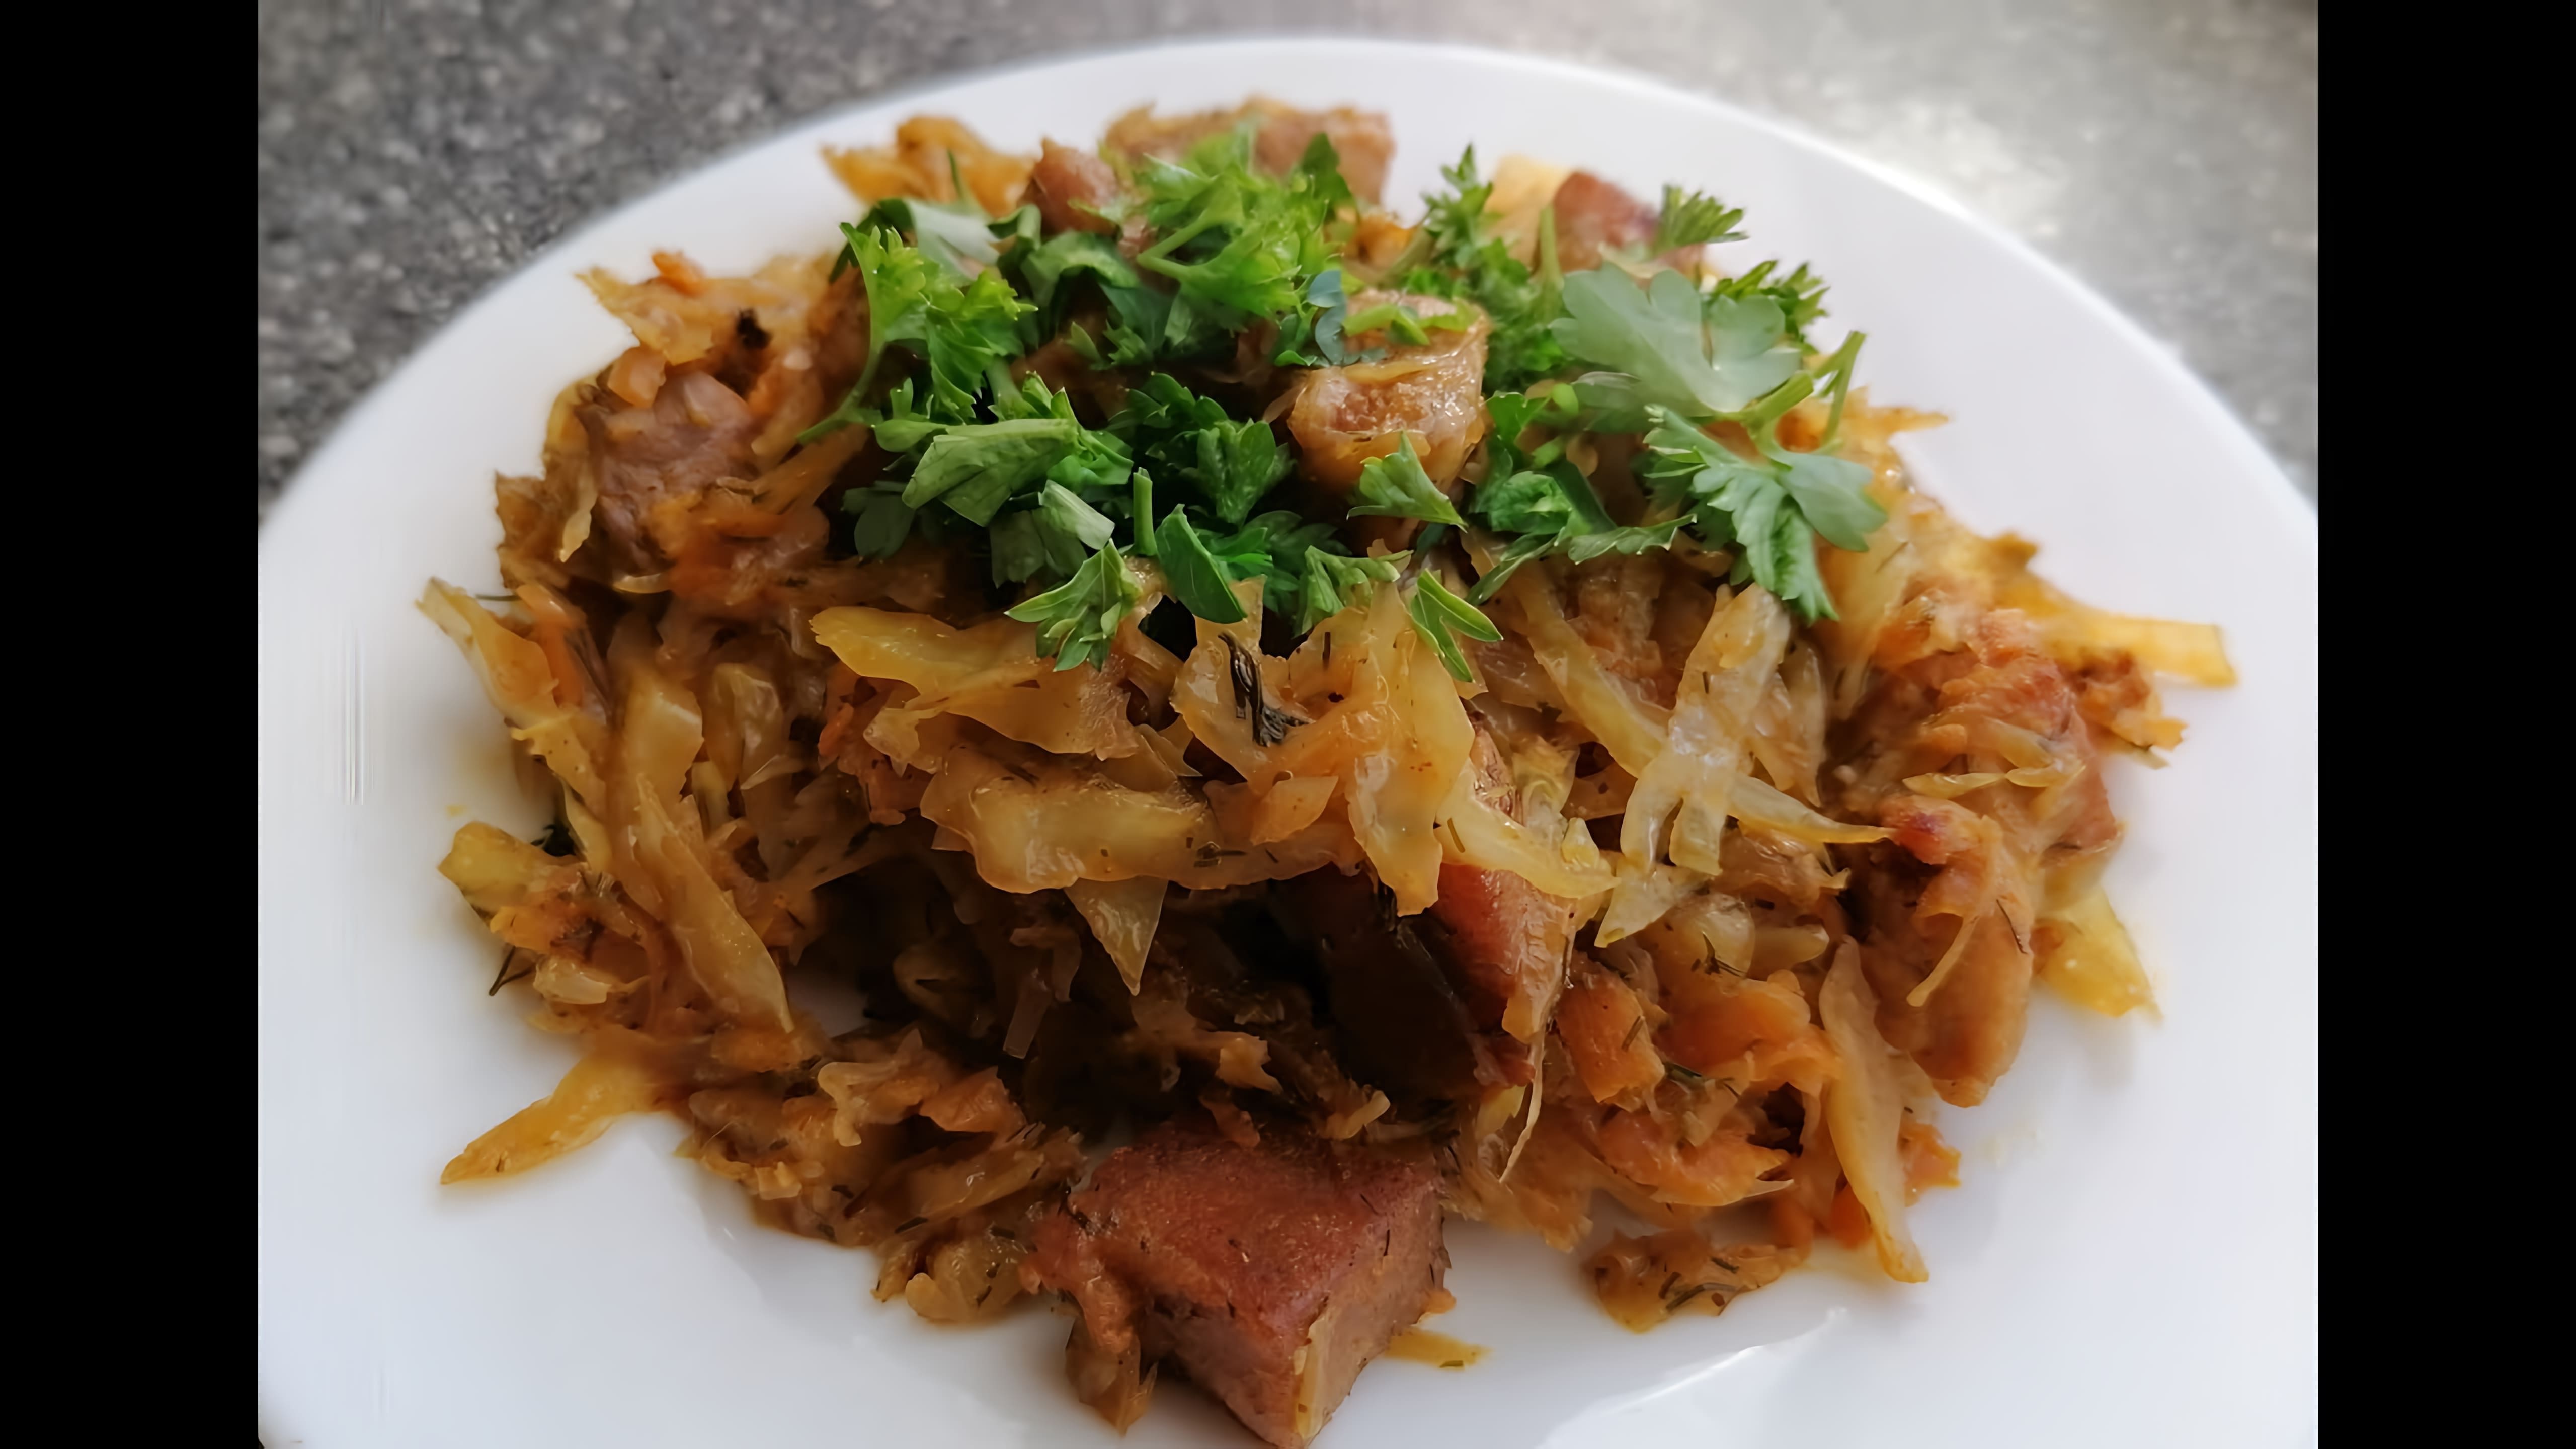 В данном видео демонстрируется рецепт приготовления бигуса - блюда из тушеной капусты с мясом